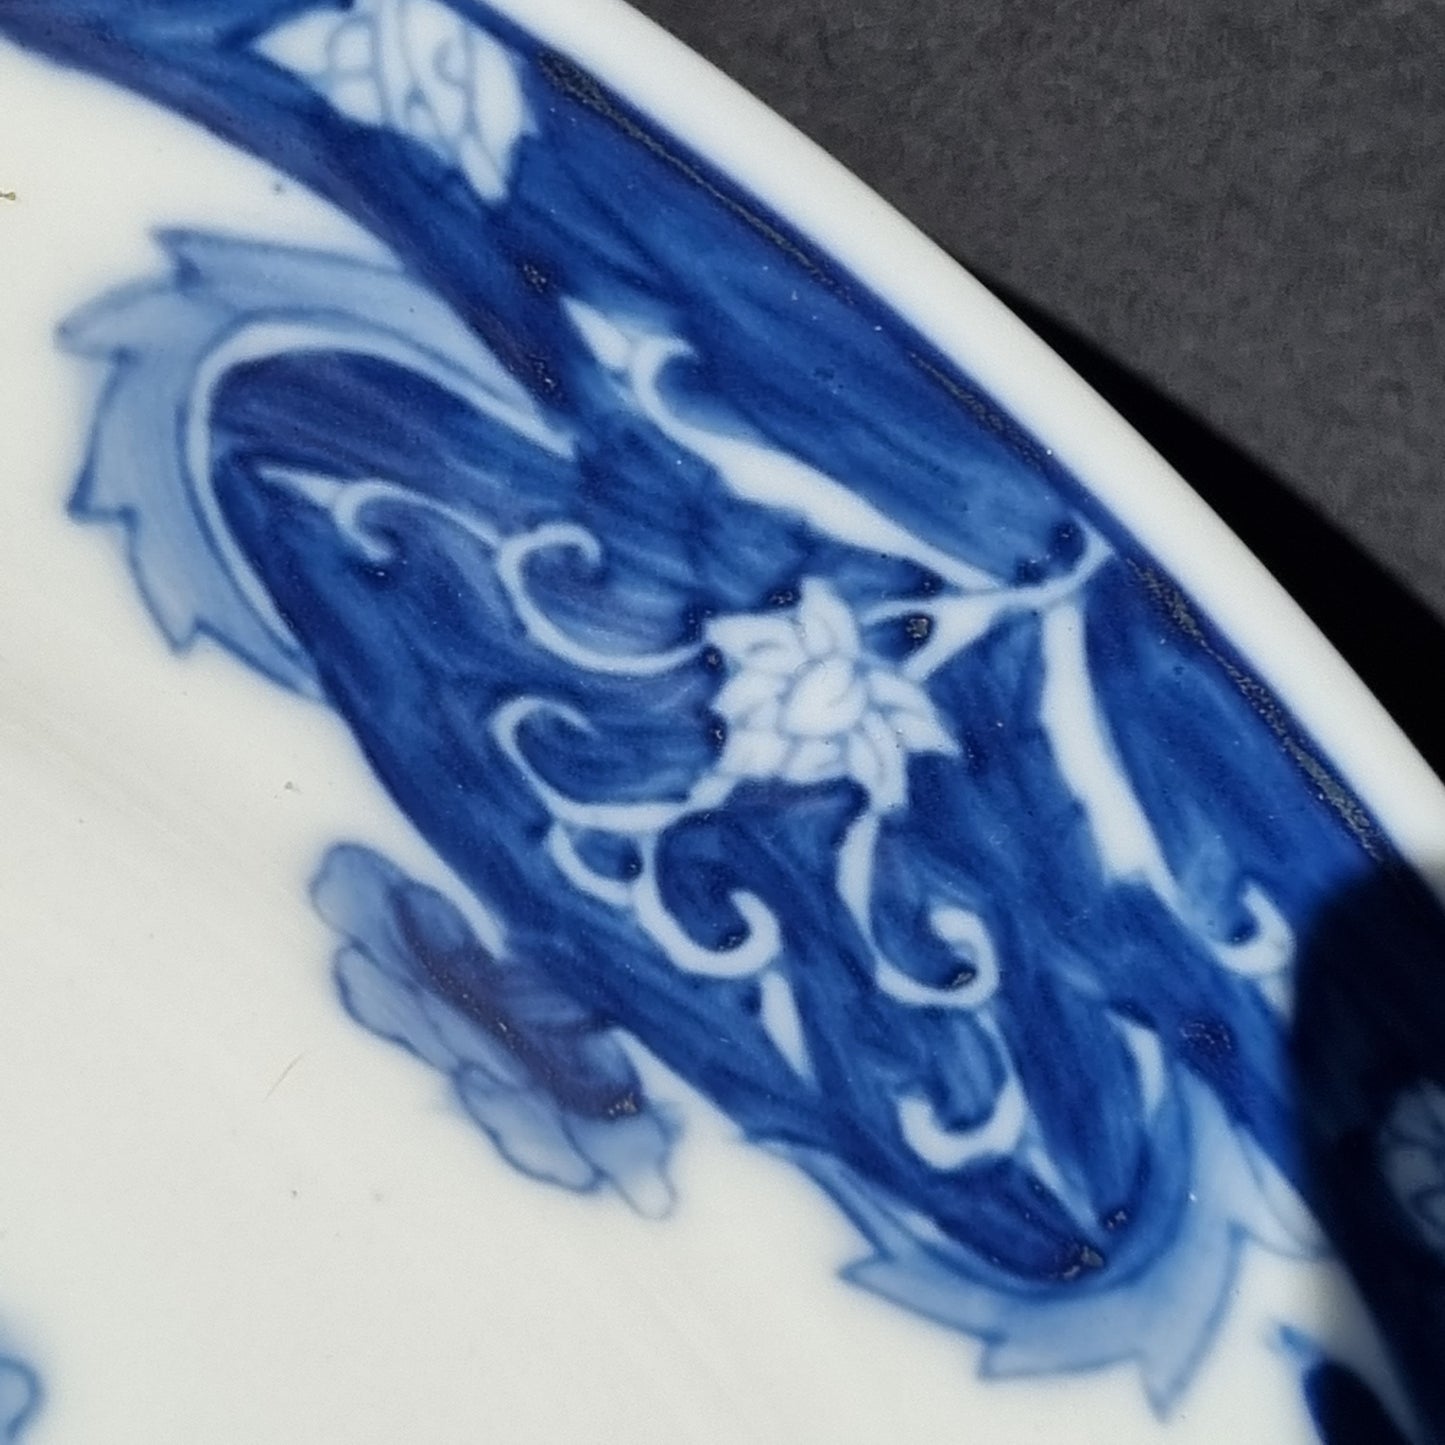 6 bajoplatos de porcelana blue and white (2)